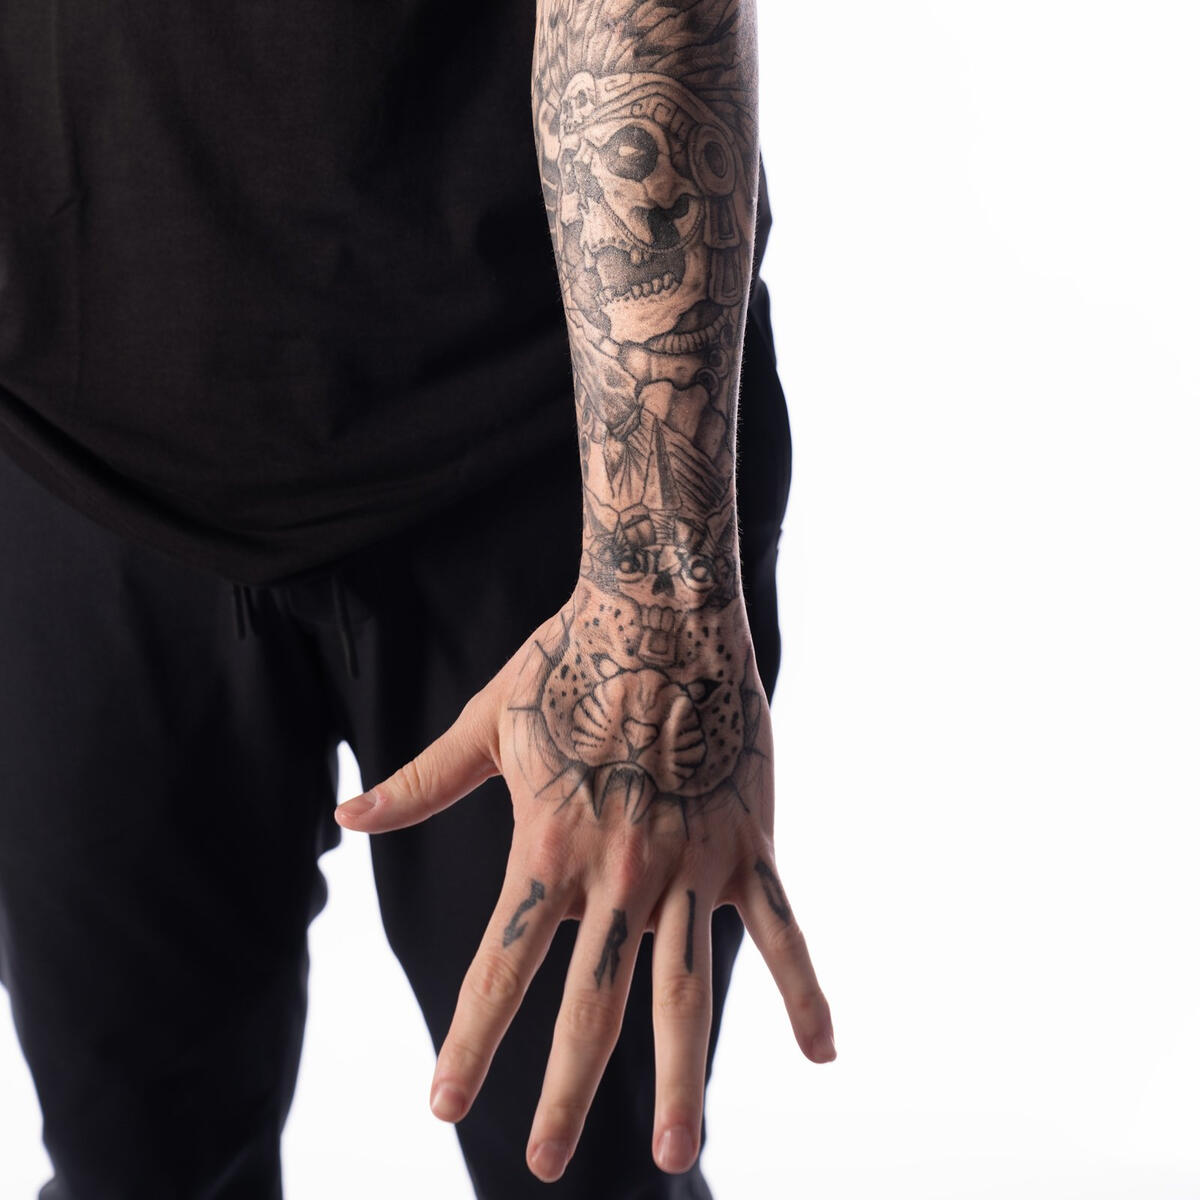 多米尼克·米斯特里奥(Dominik Mysterio)纹身欣赏-WWE纹身